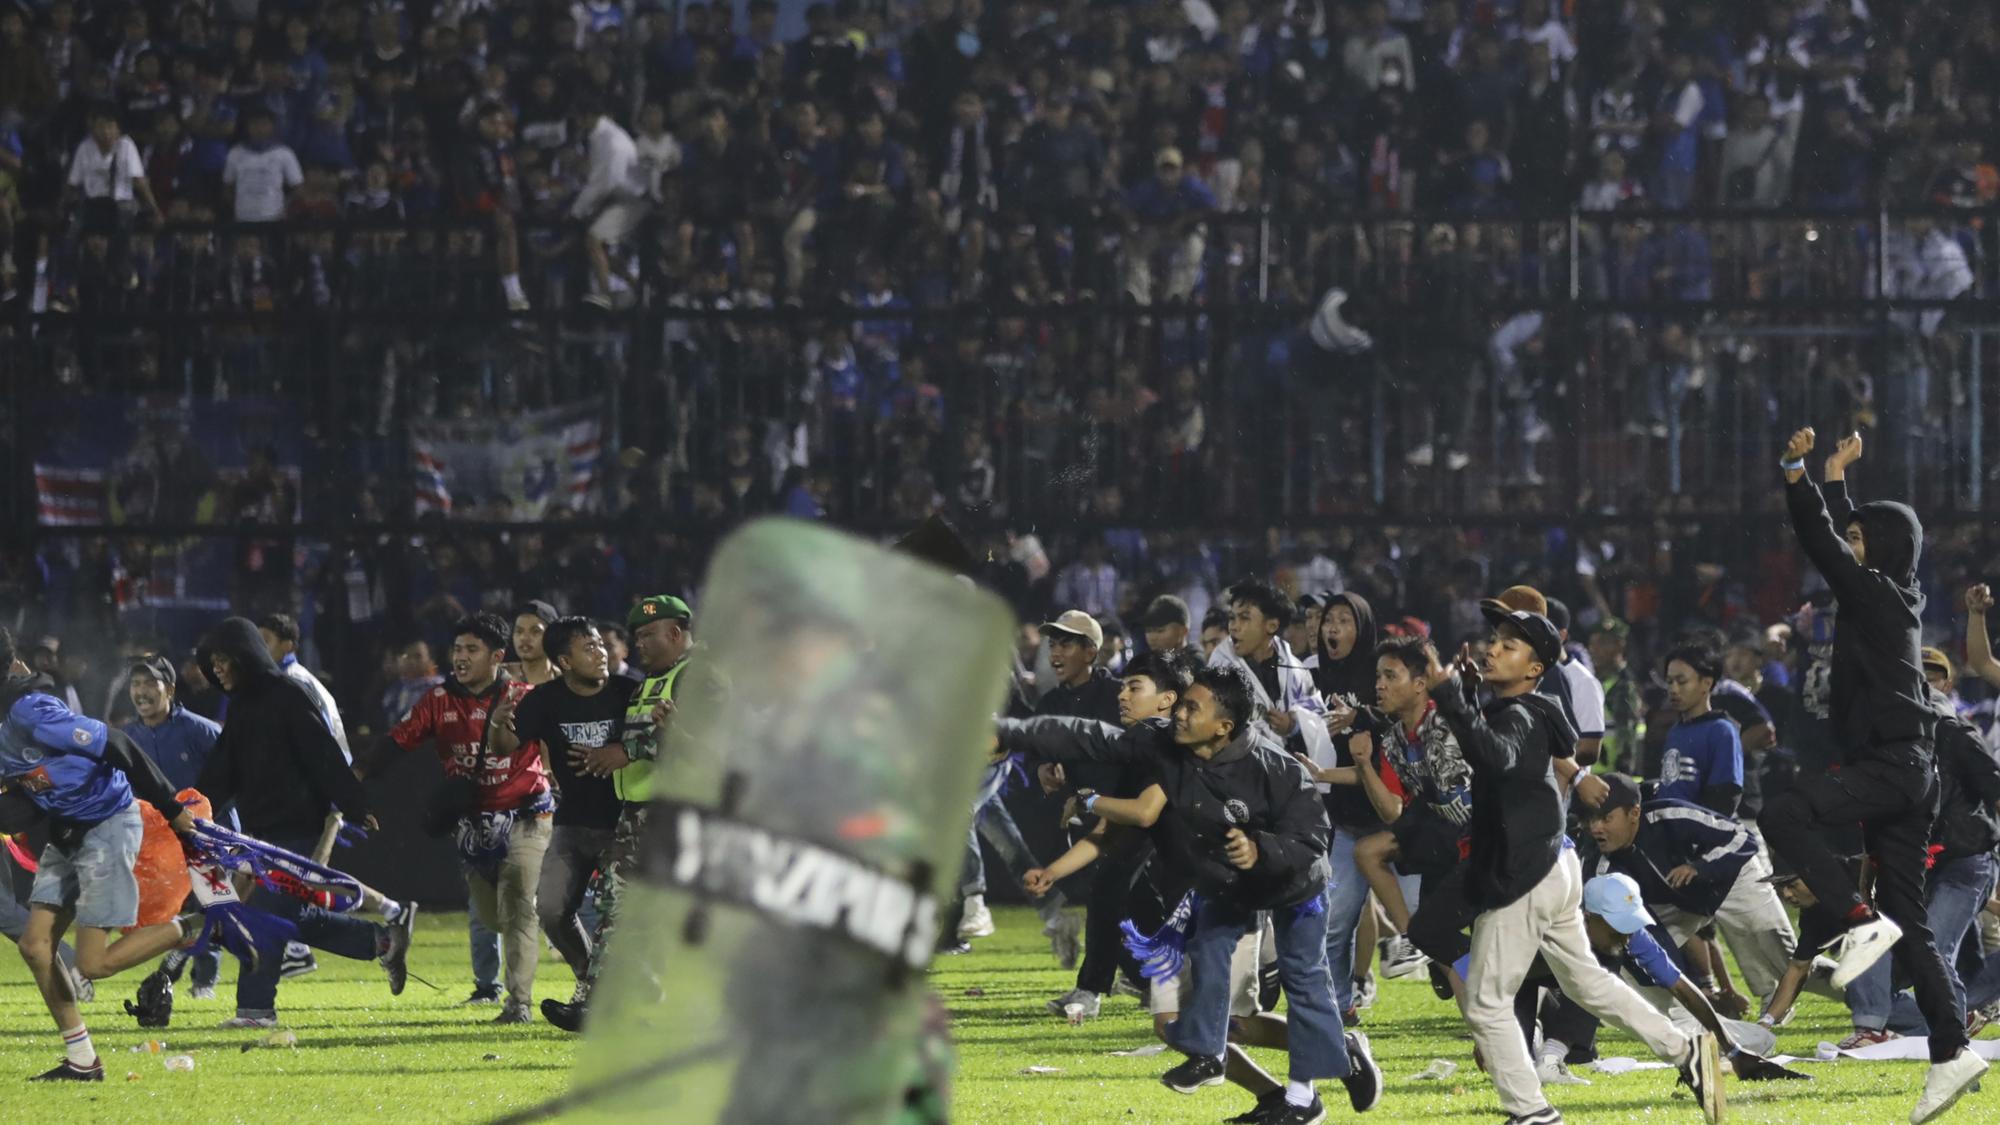 Po tragédii na futbalovom zápase v Indonézii vyvodili prvé dôsledky.  Skončil šéf polície